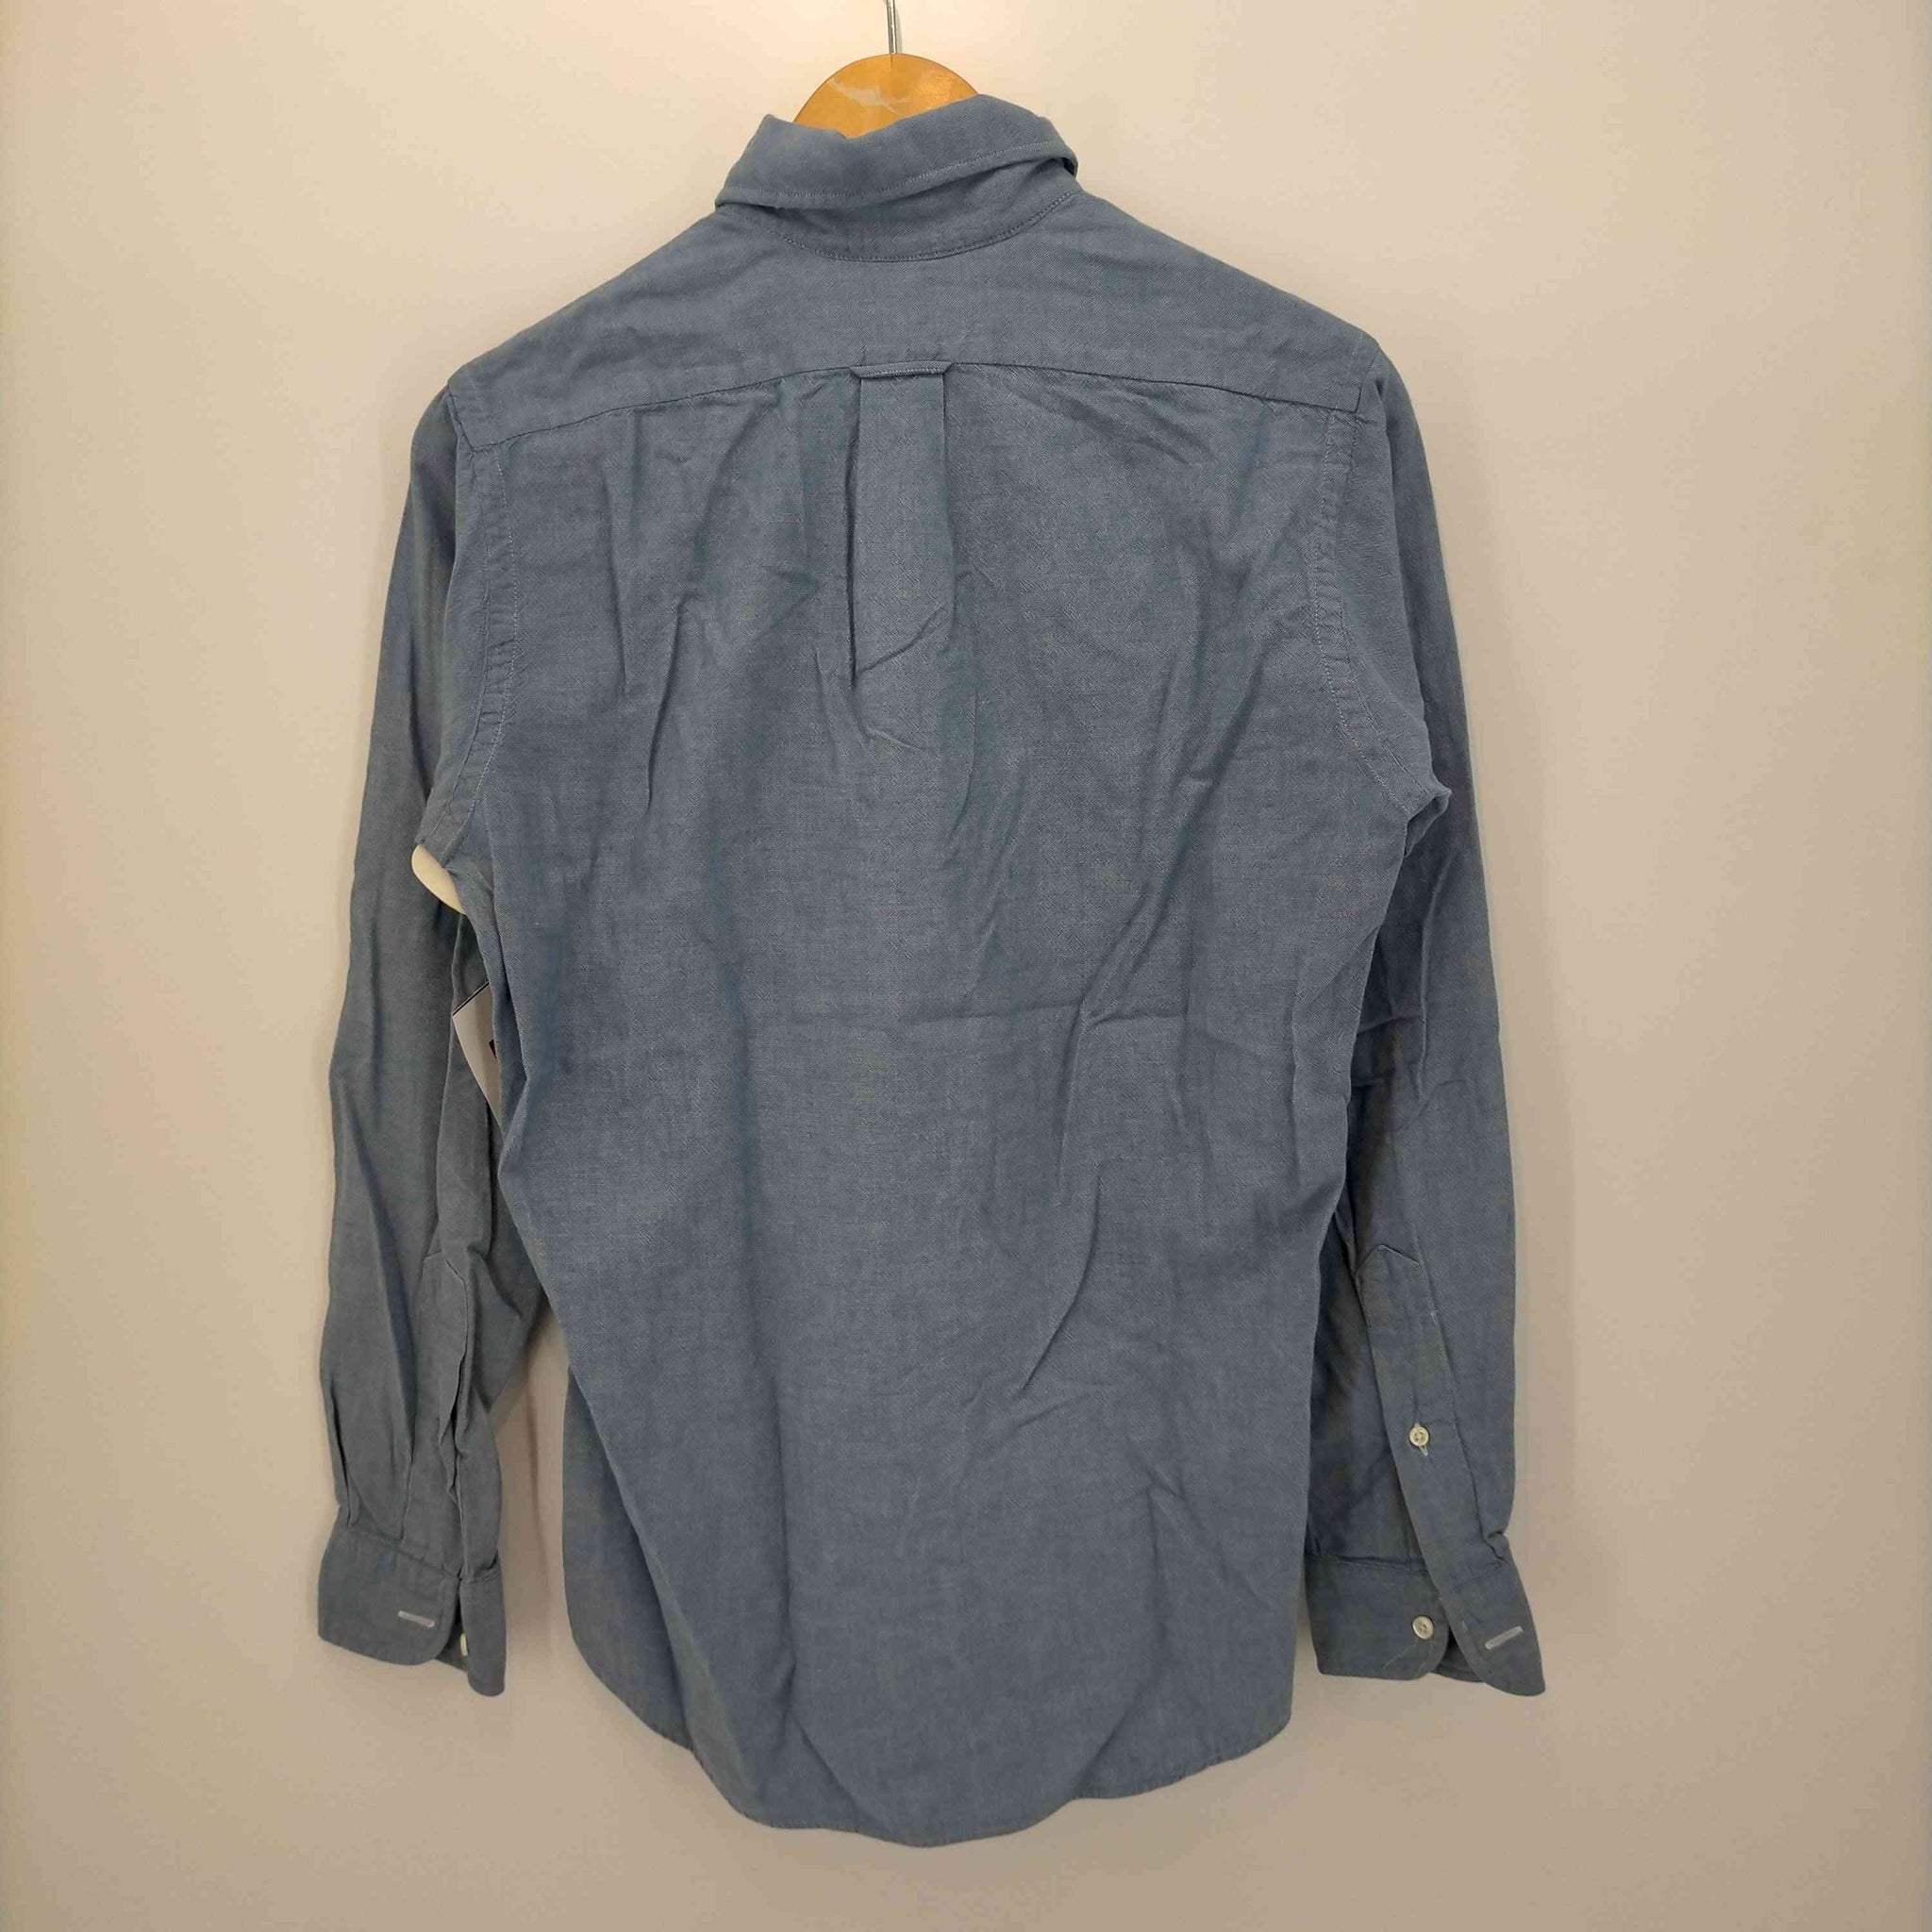 individualized shirts(インディヴィジュアライズドシャツ)SLIM FIT シャンブレー BDシャツ